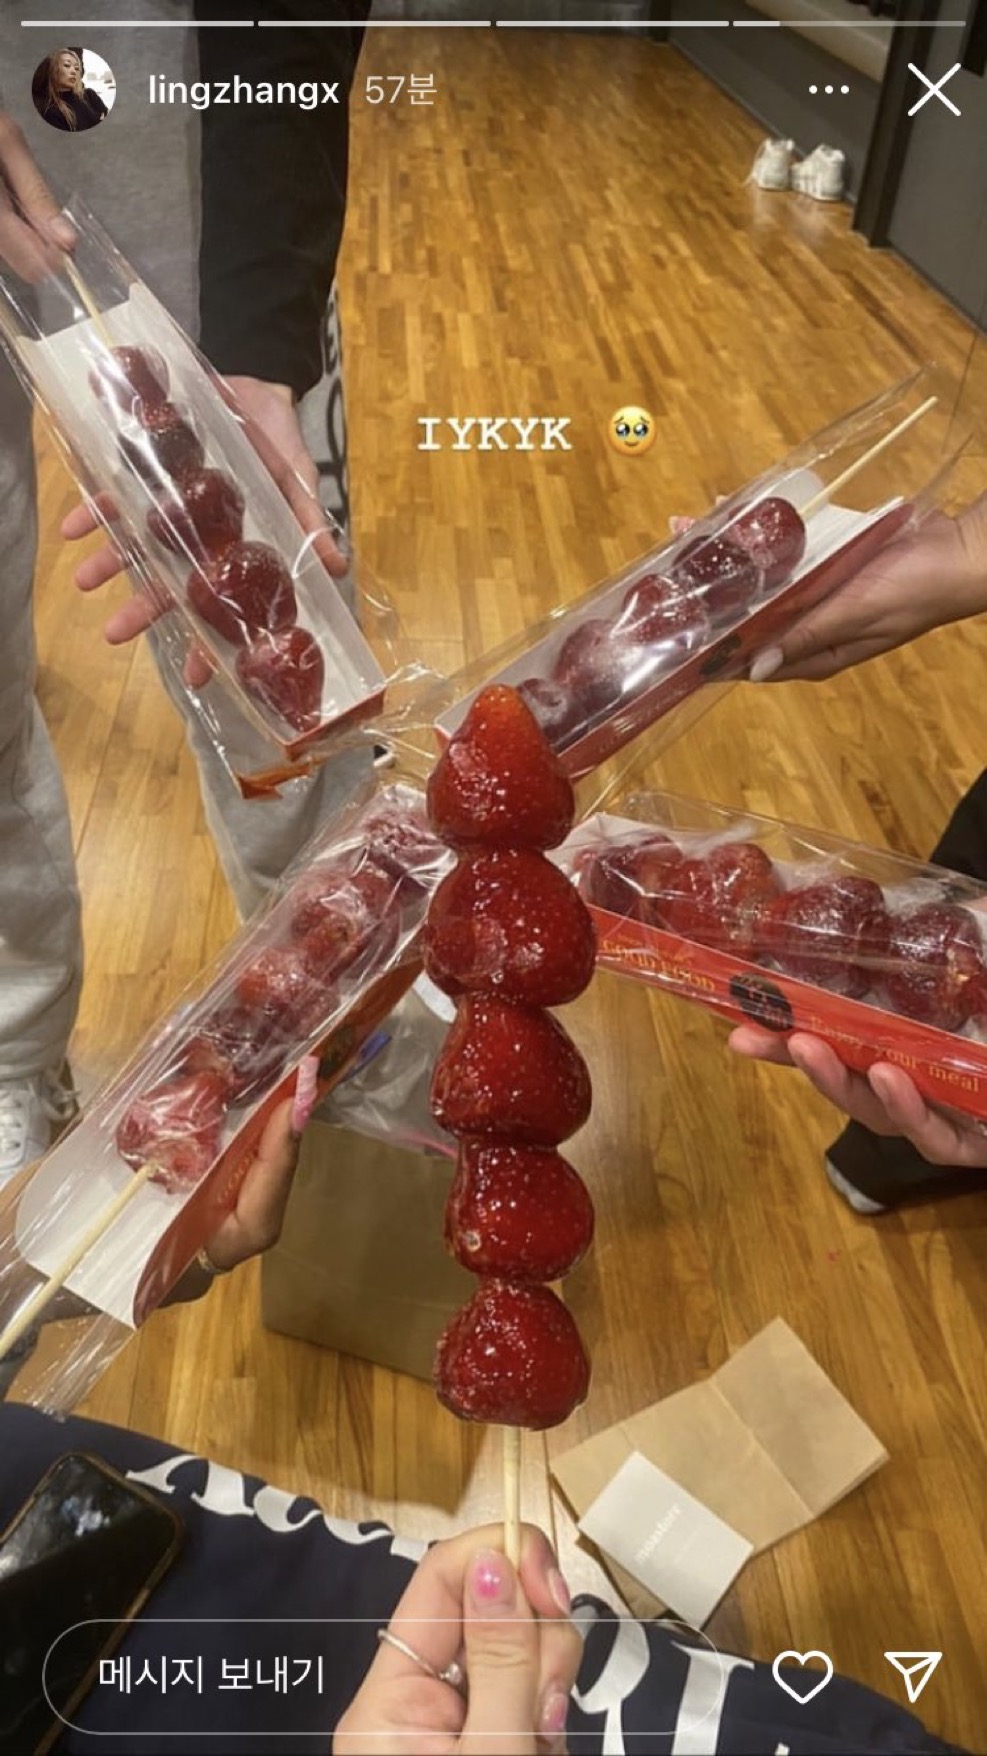 南韓掀起糖葫蘆熱，許多人趕熱潮一起吃，例牌「相機食先」。 Instagram